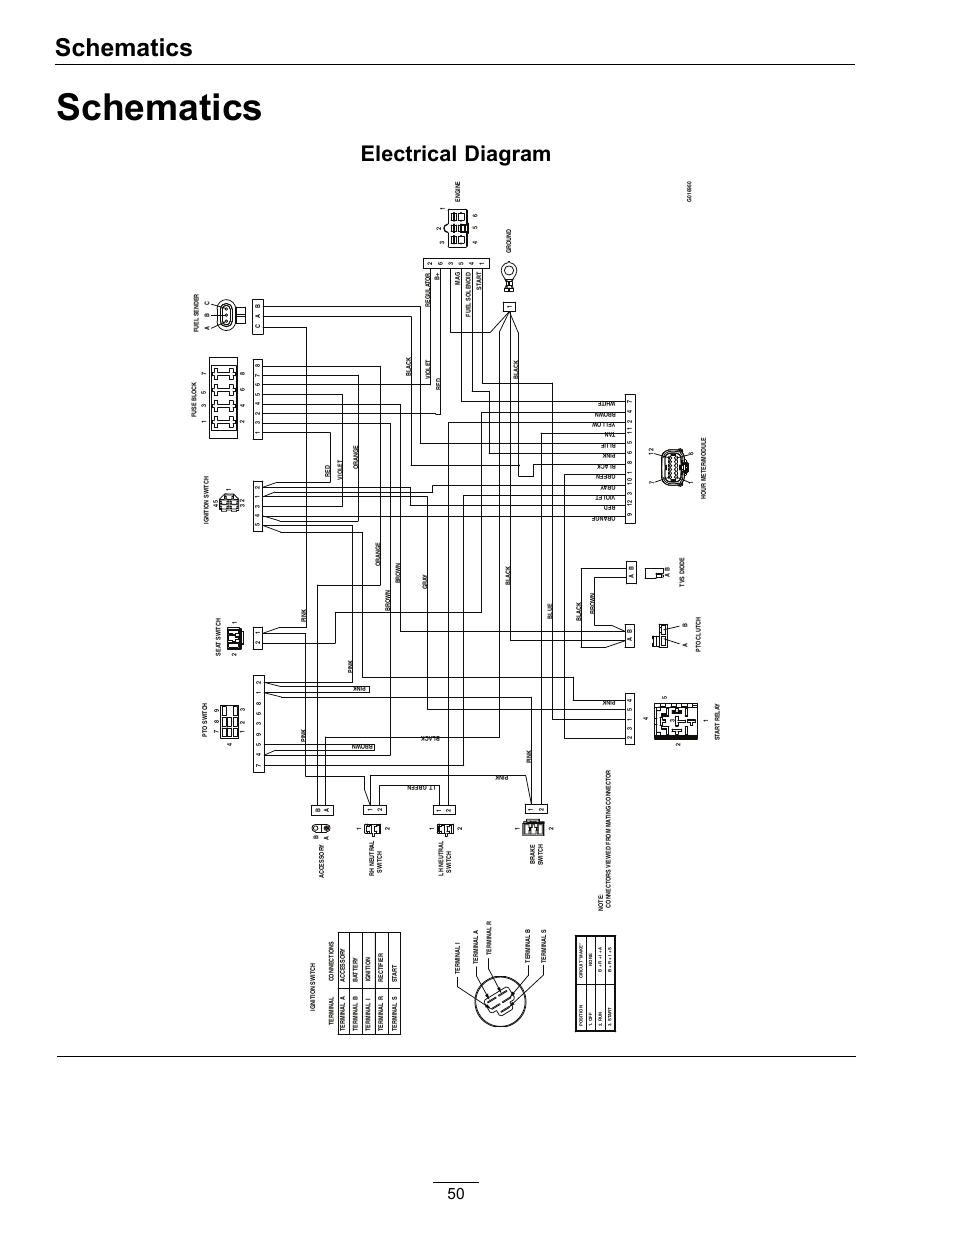 2007 sterling lt9500 wiring diagram